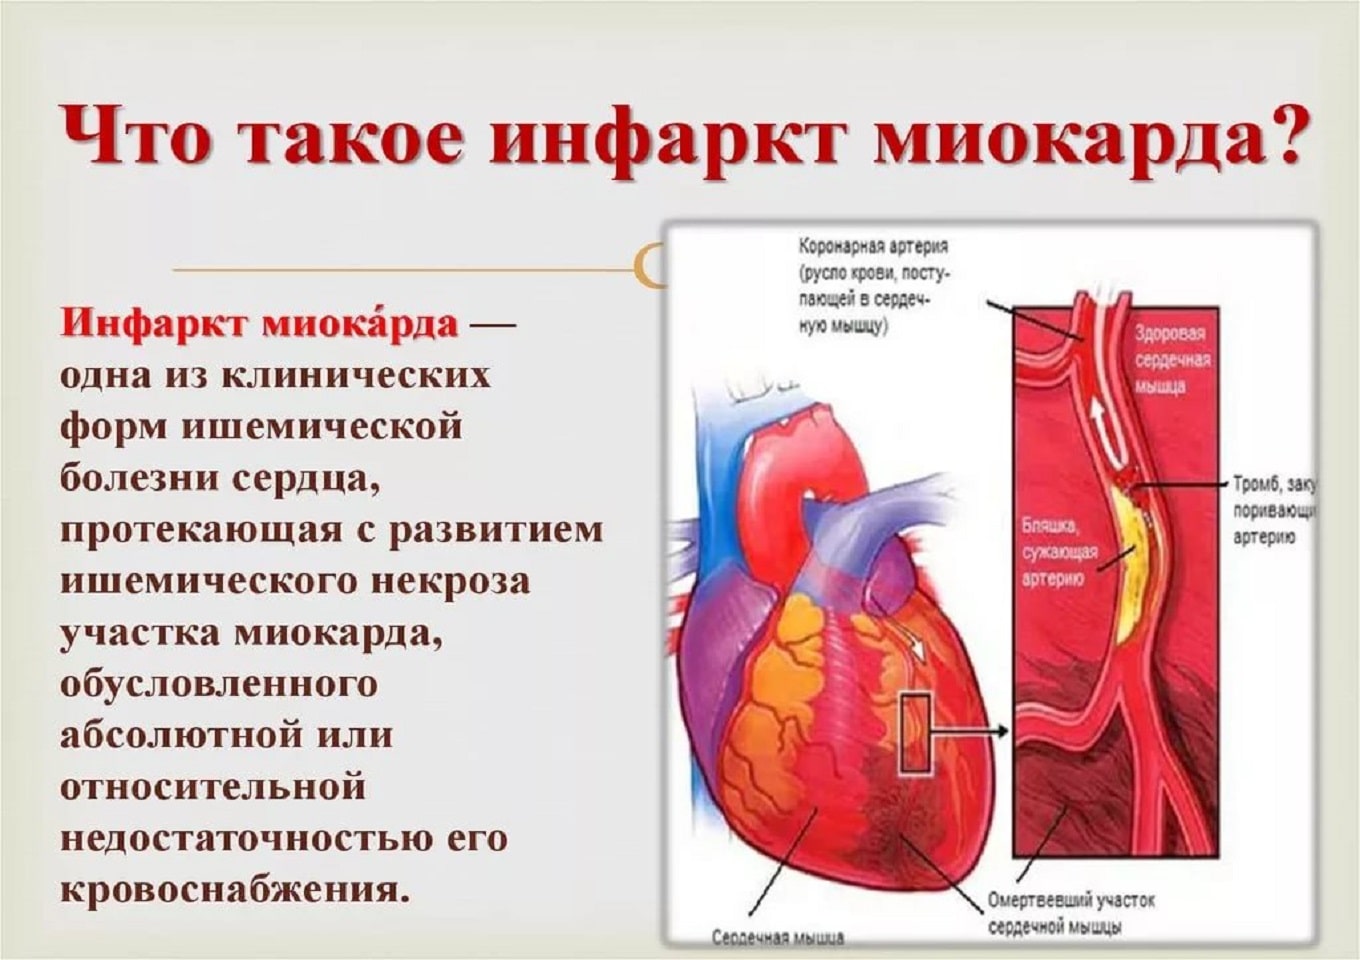 Инфаркт миокарда бляшка